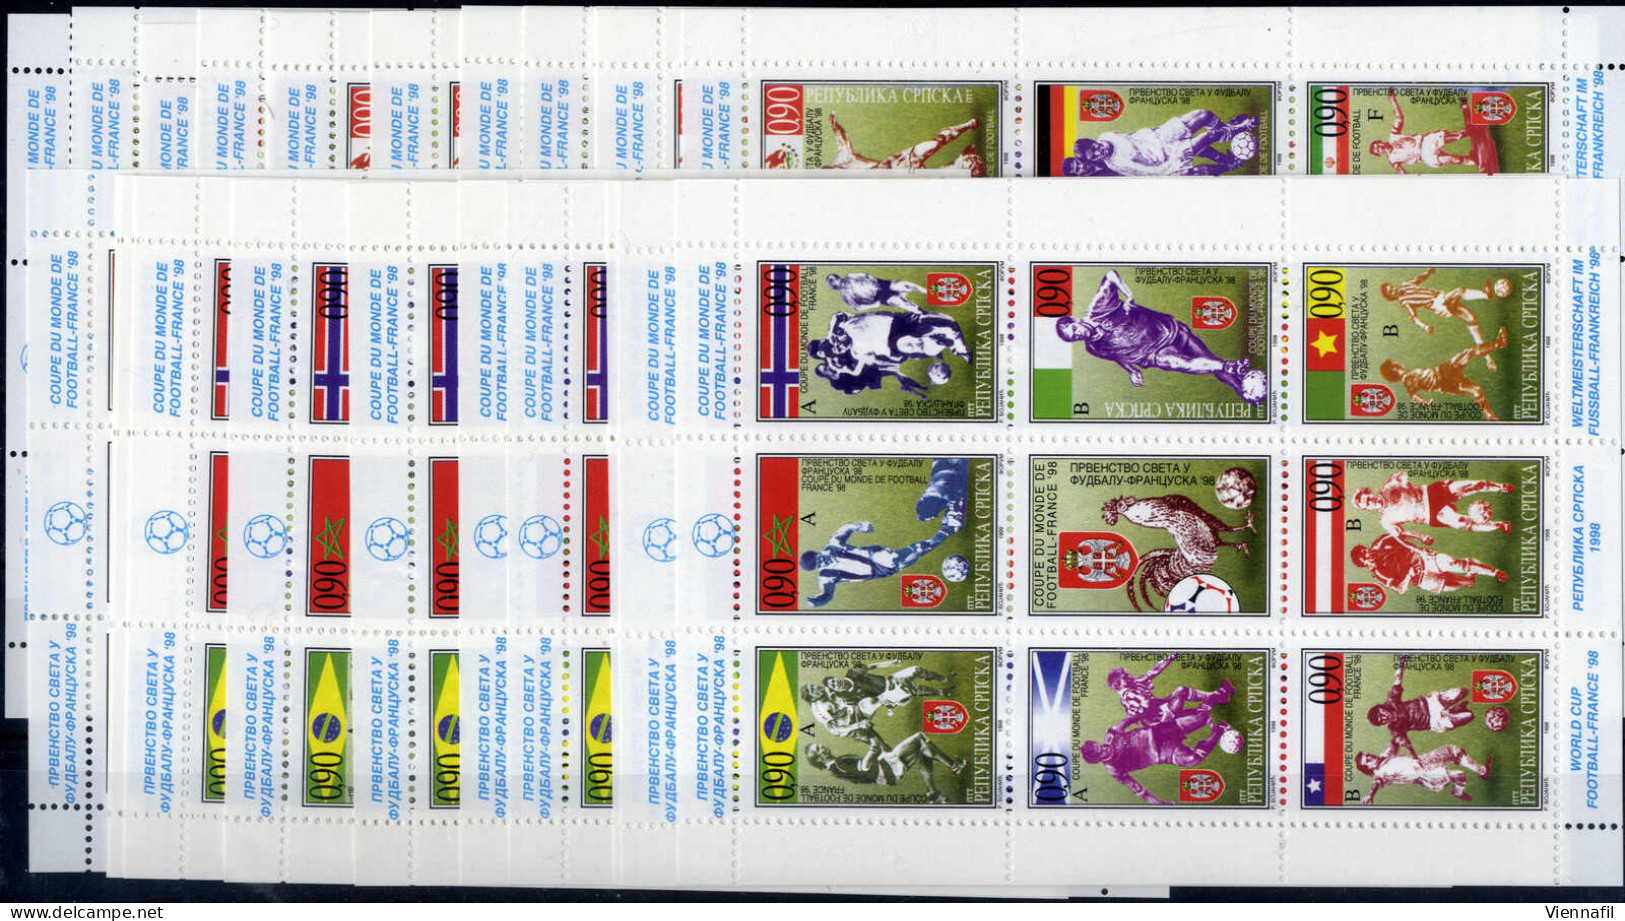 ** 1998, Fußball-Weltmeisterschaft In Frankreich, Lot Von 12 Kleinbogensätzen, Postfrisch (Mi. 73-104 Klb., € 600) - Bosnia Herzegovina